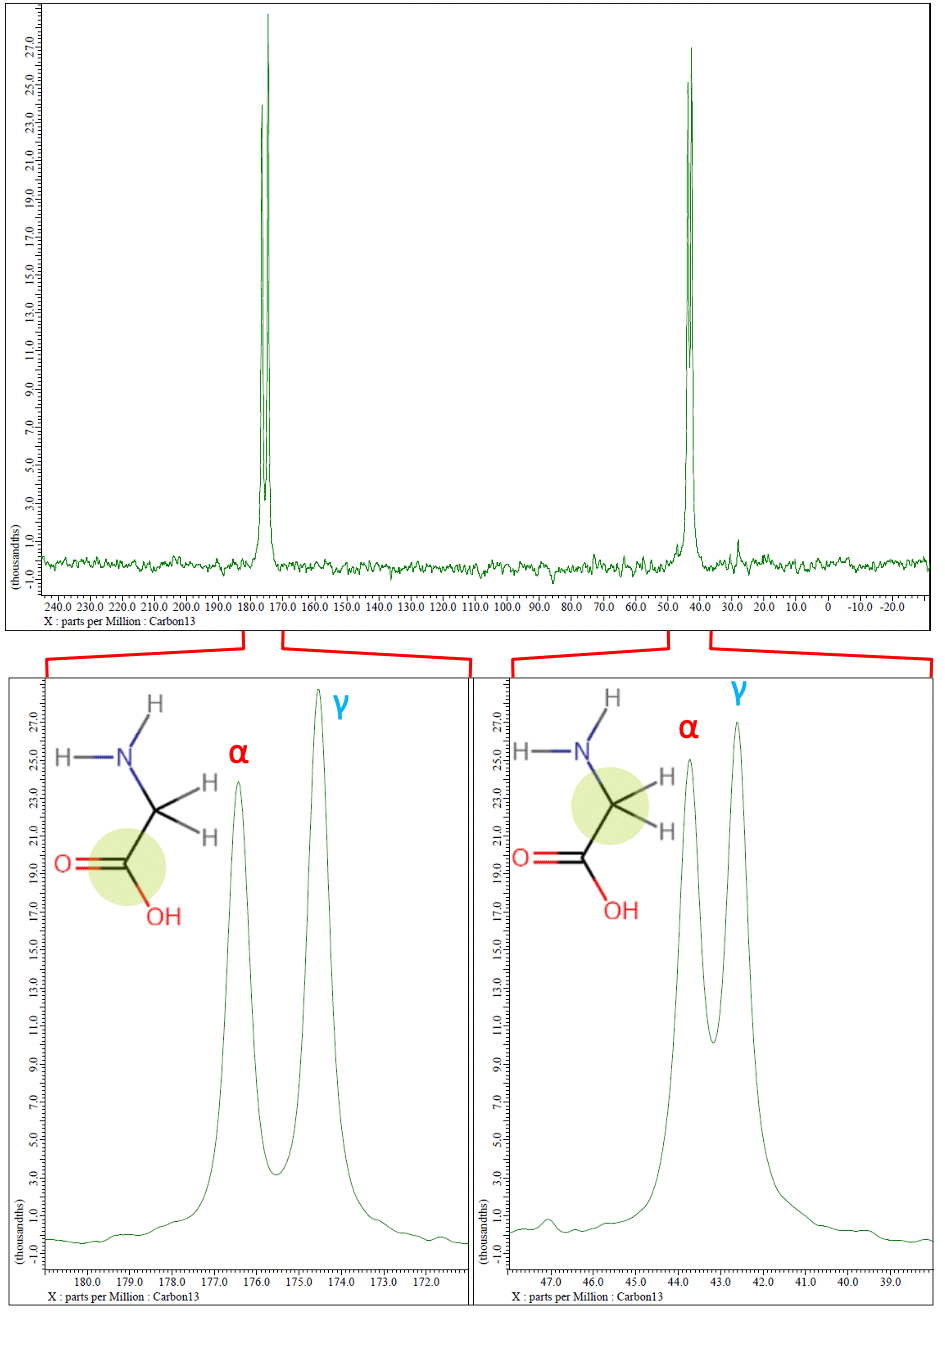 Fig2. 13C CPMAS spectrum